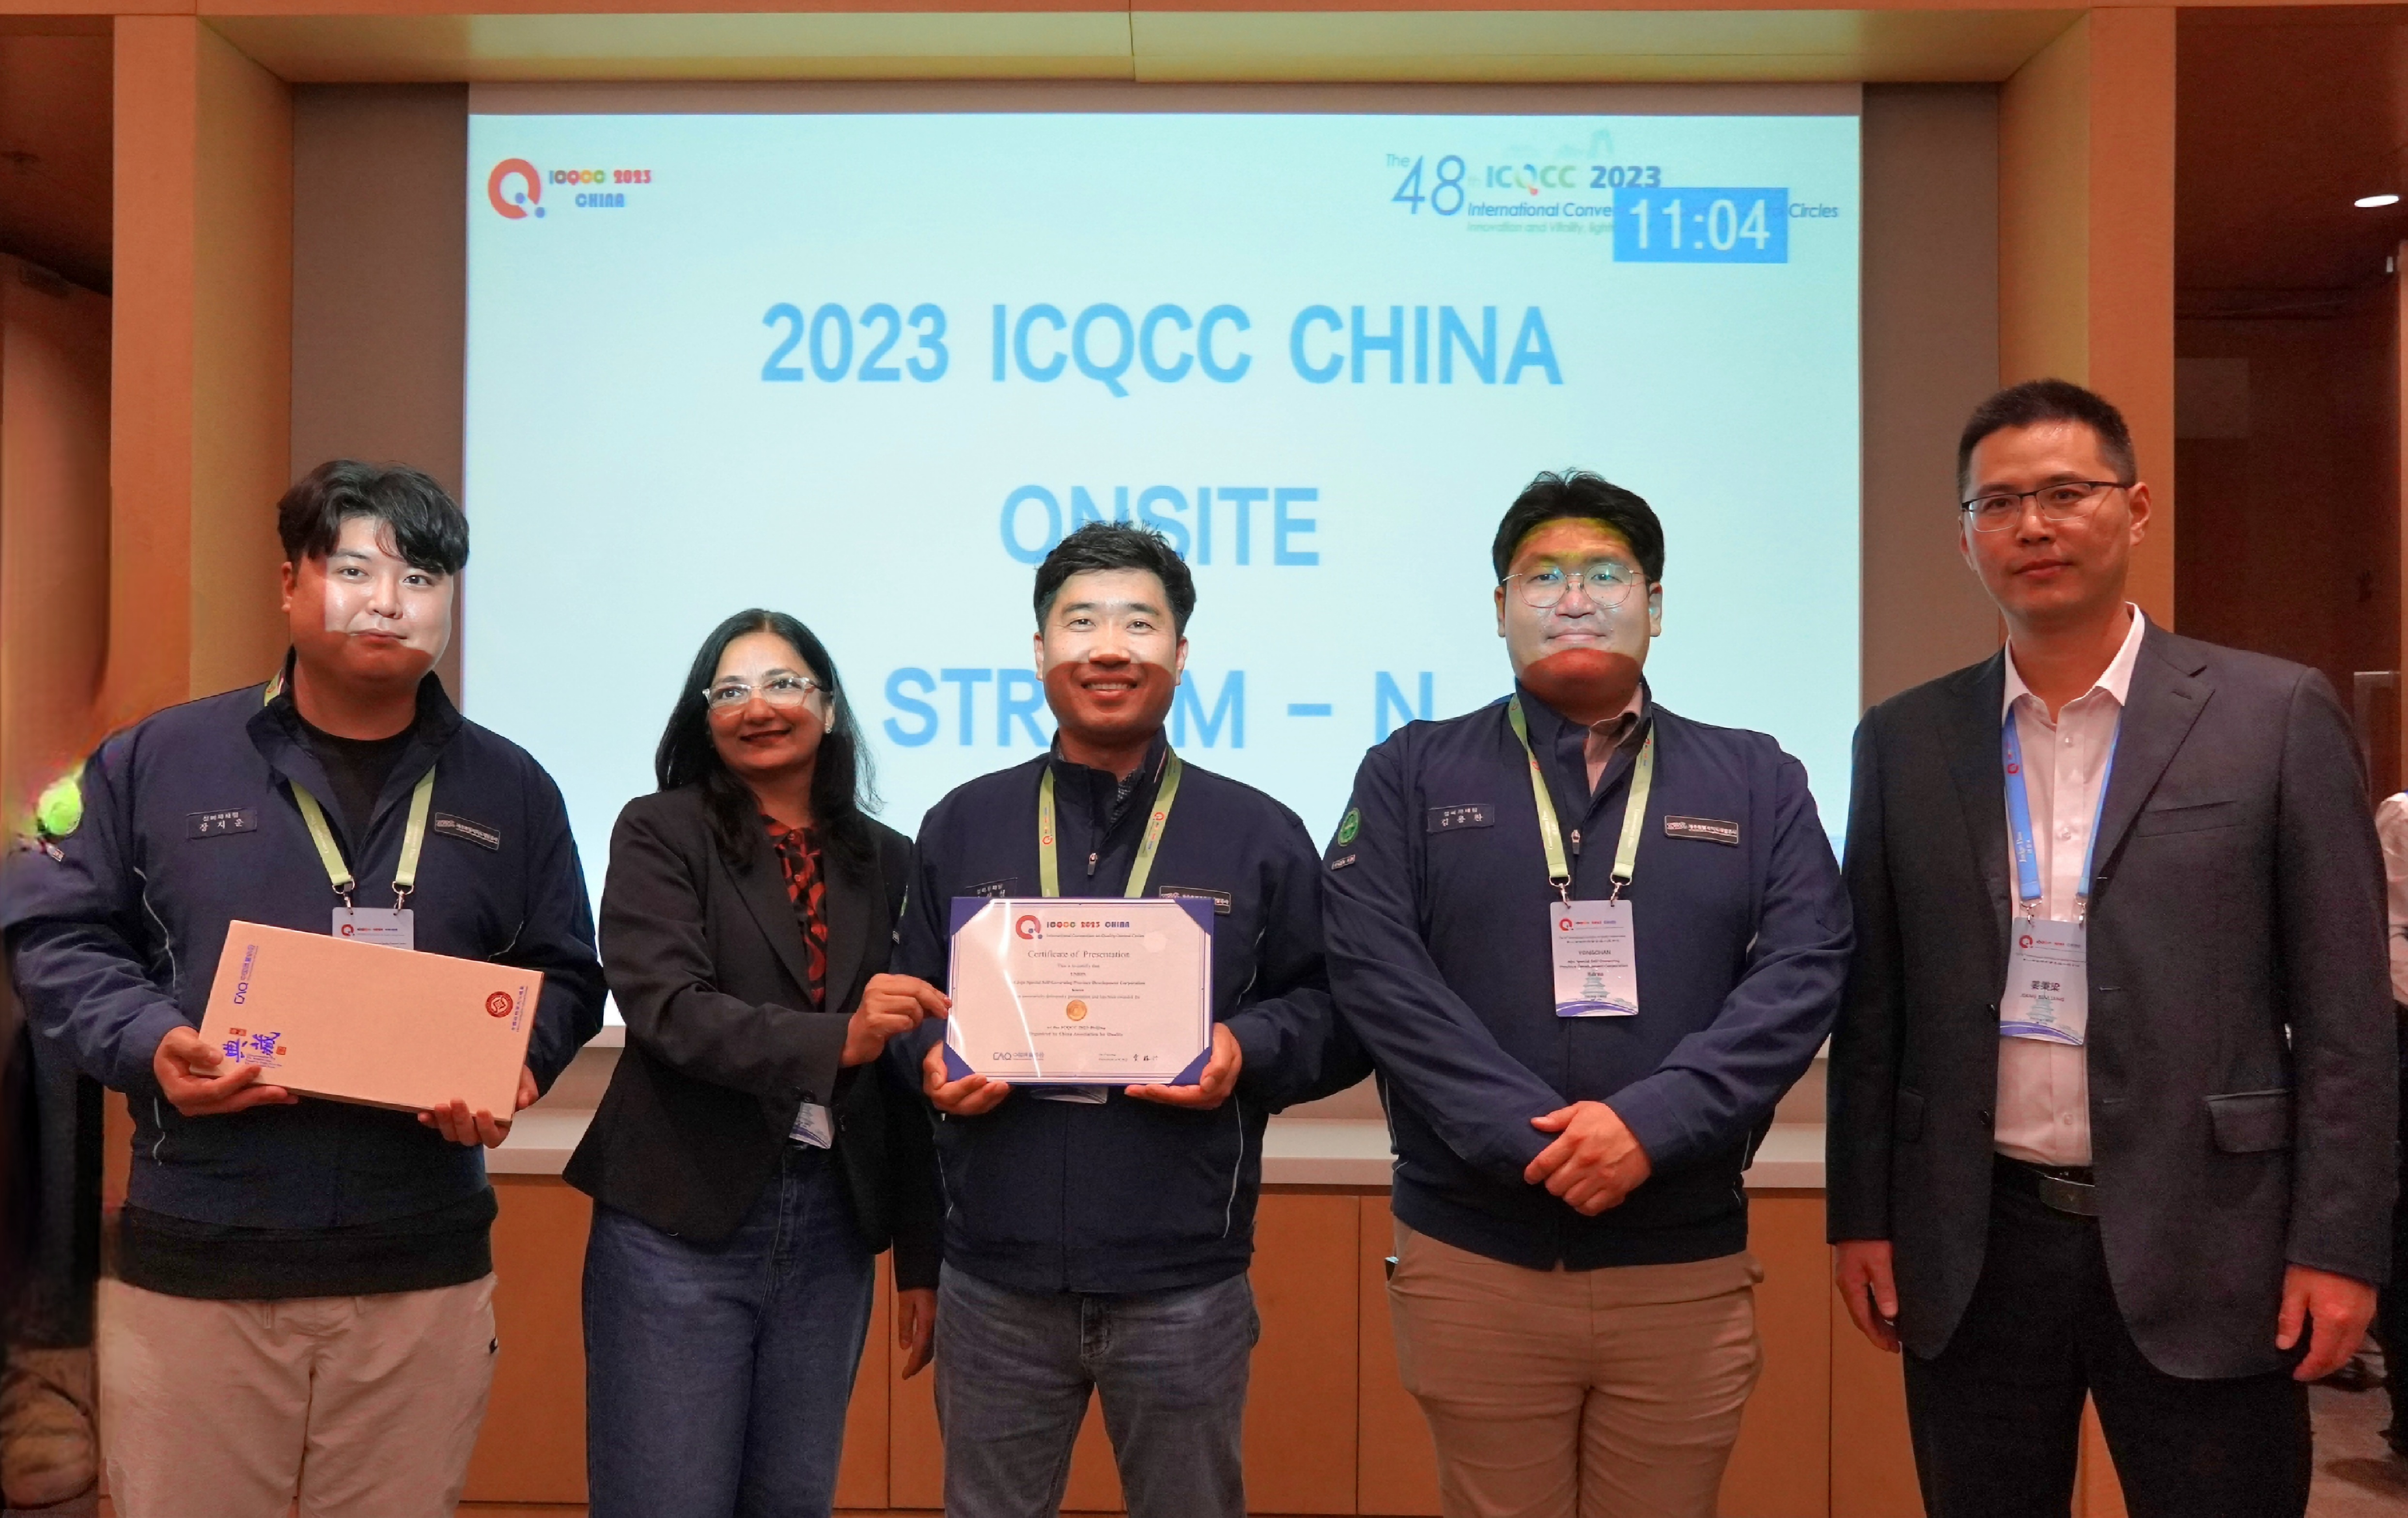 제주개발공사, 국제품질분임조대회(ICQCC) 3년 연속 금상 수상 (2)